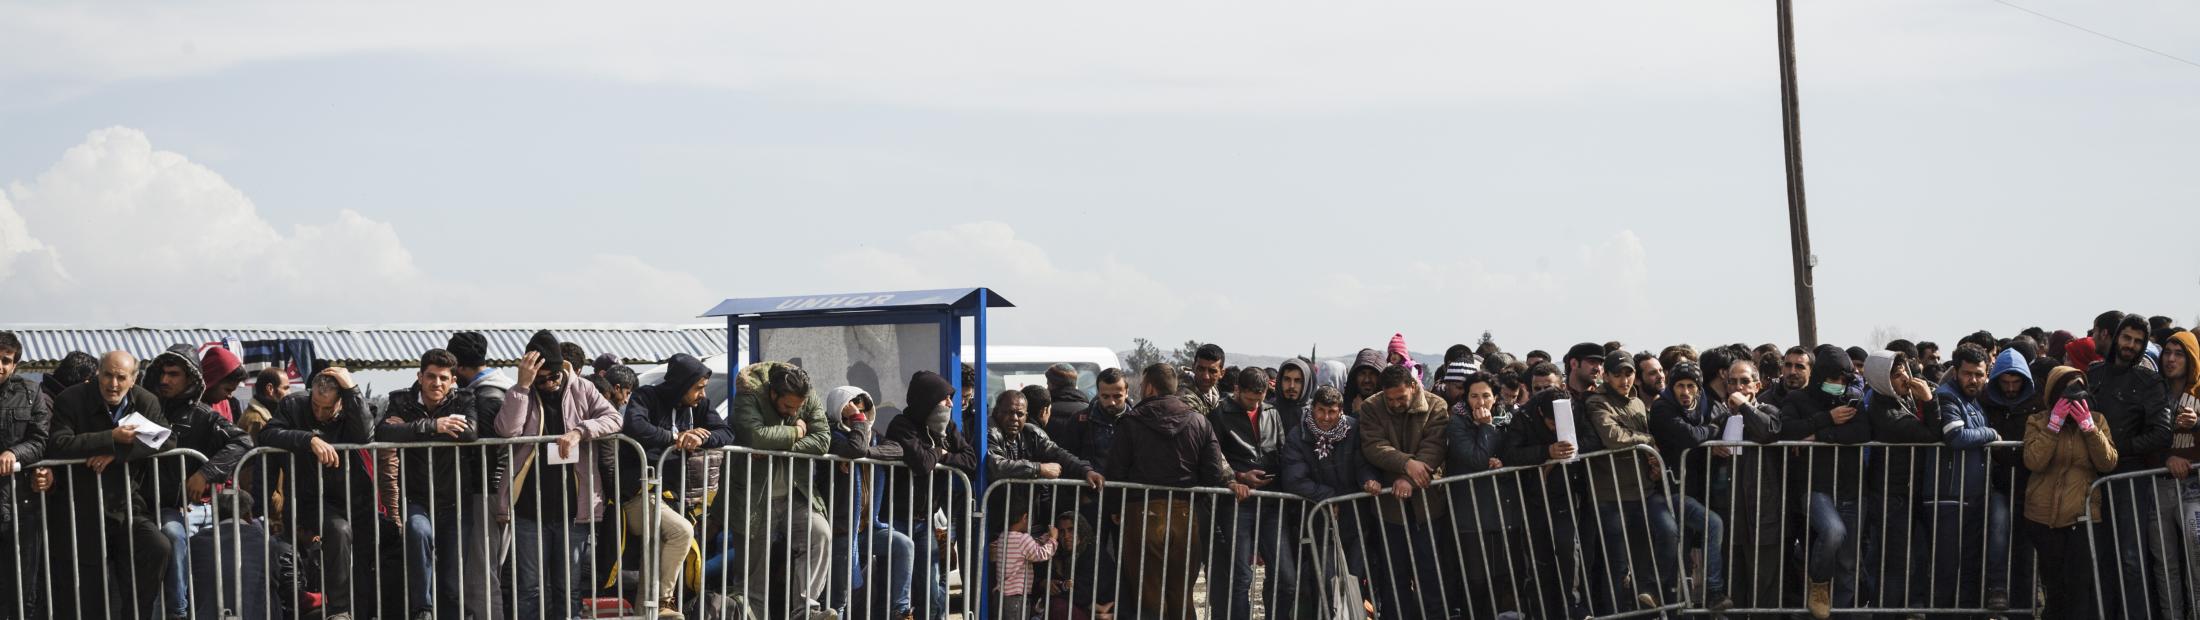 Crisis de refugiados en Grecia: Filippo Grandi indica que se necesita seguir trabajando con la UE